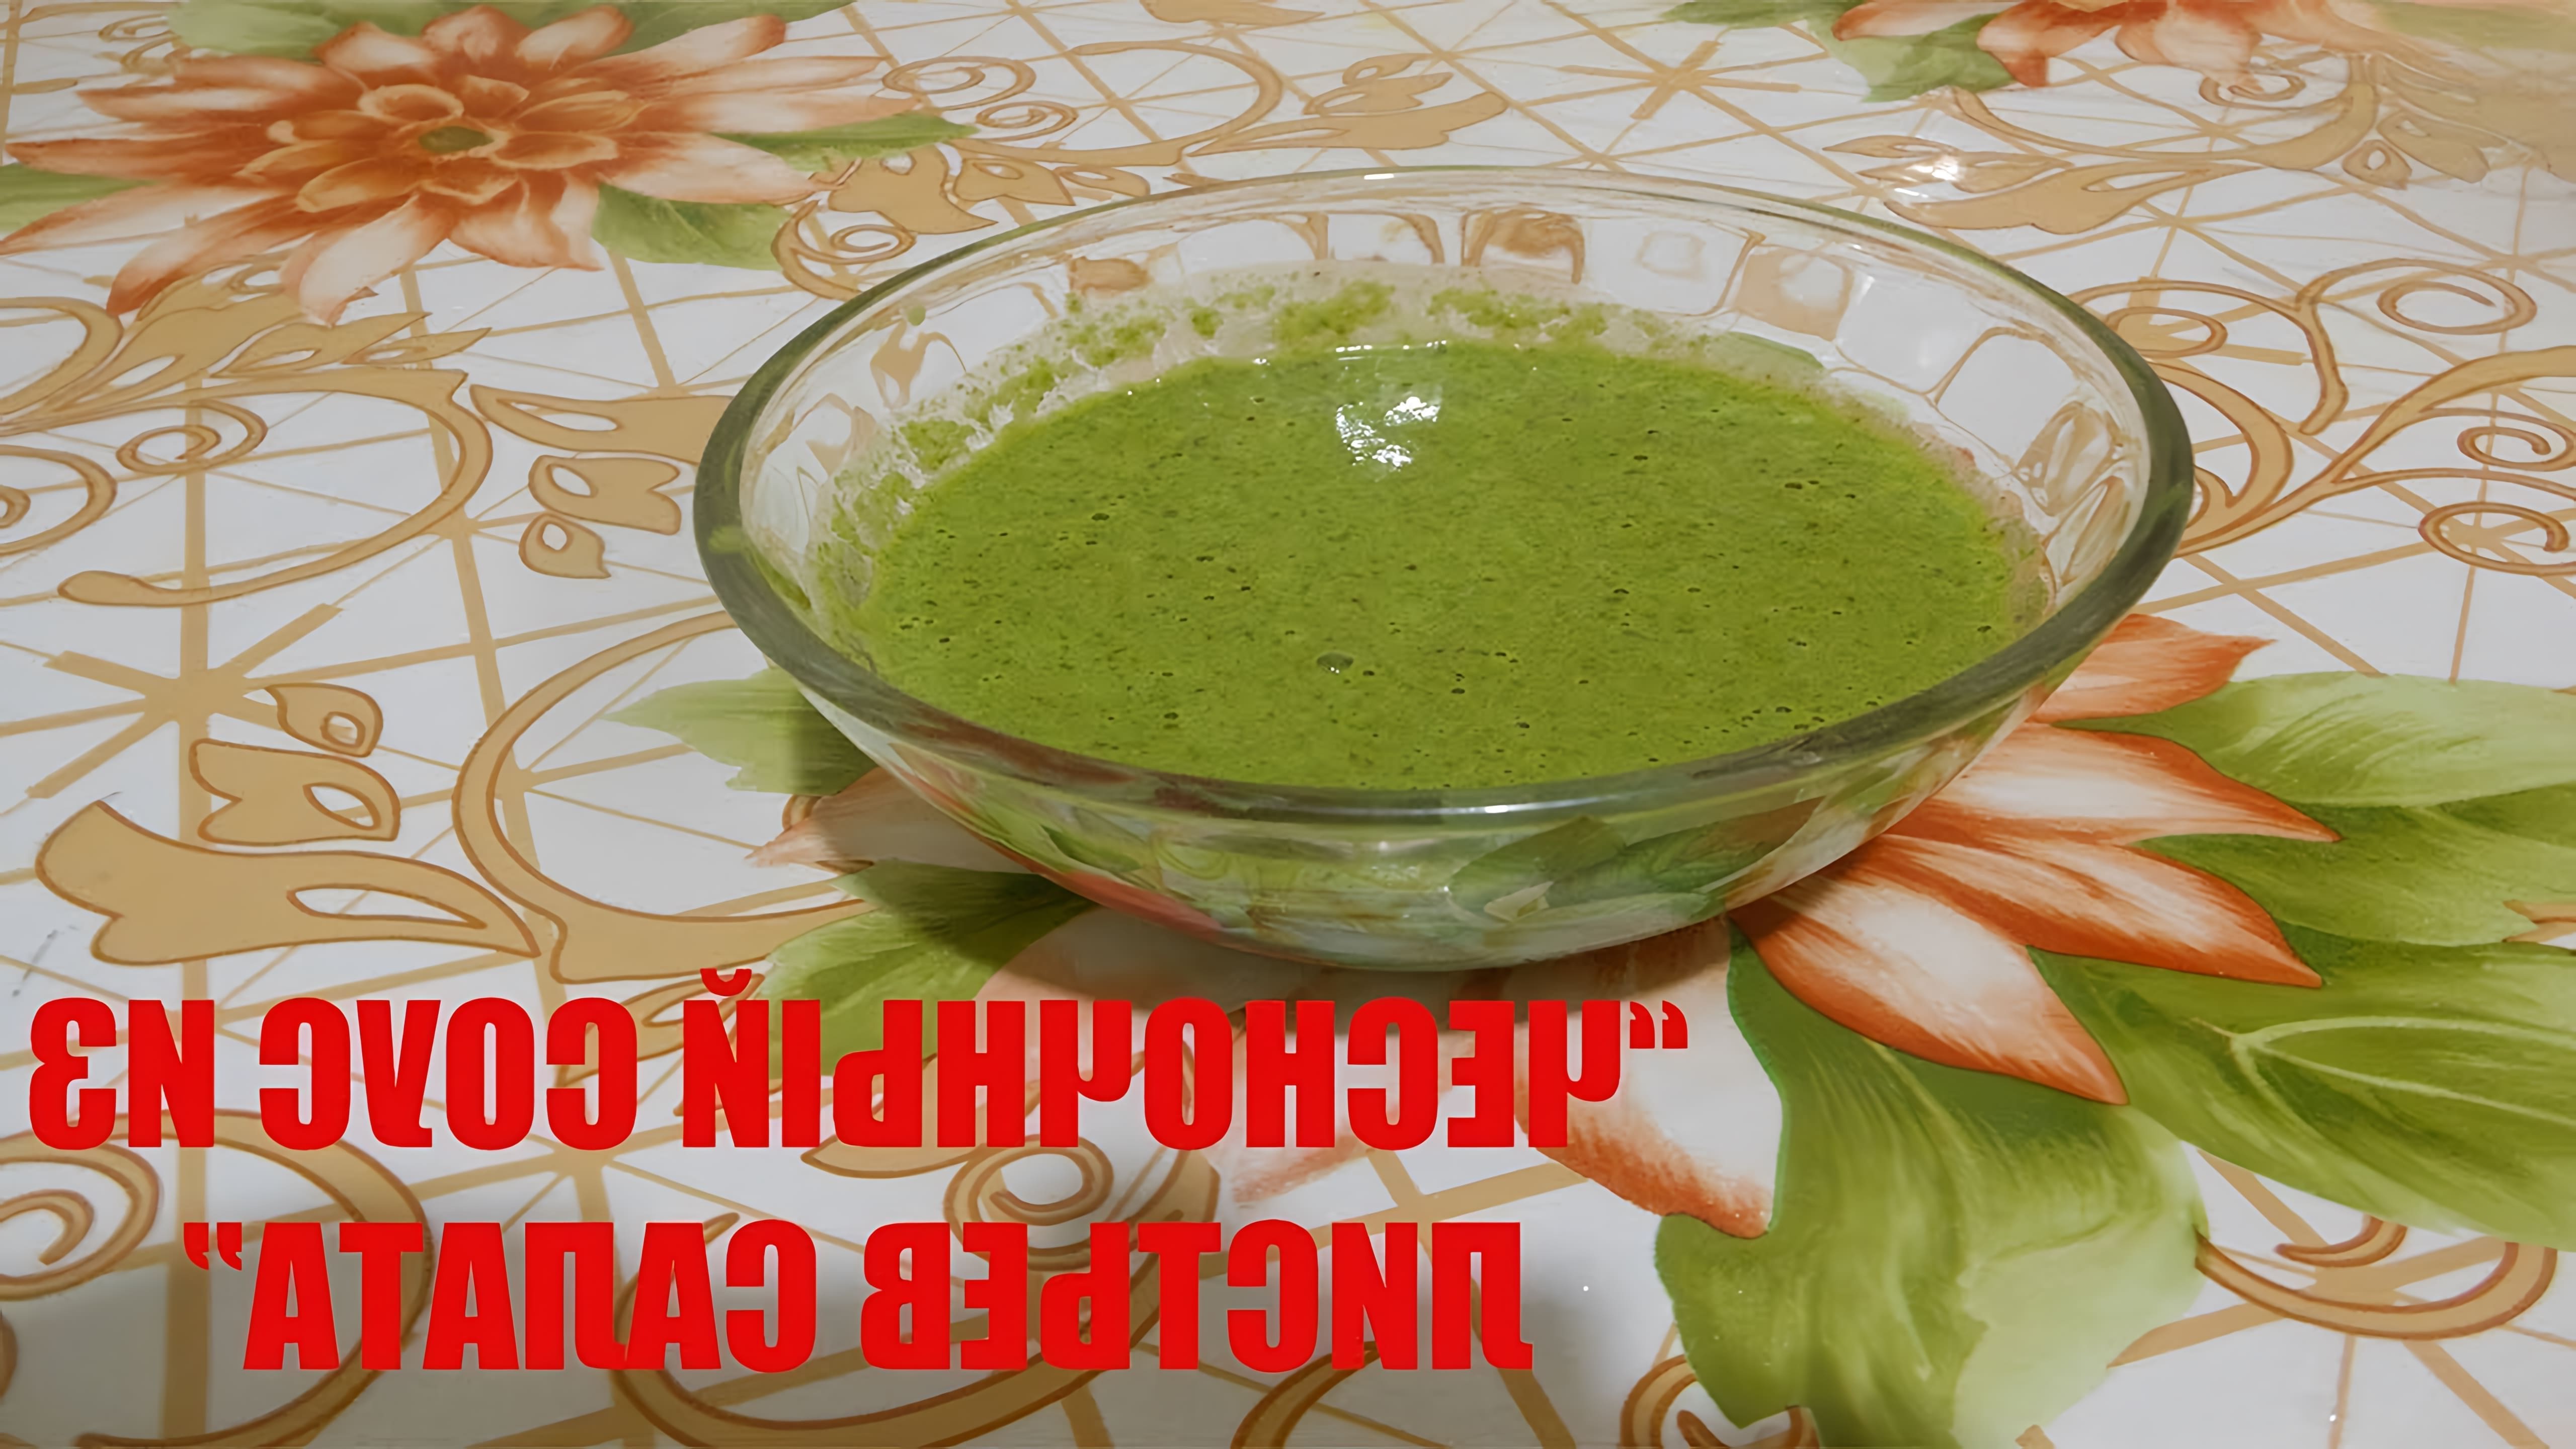 В этом видеоролике демонстрируется процесс приготовления чесночного соуса из листьев салата